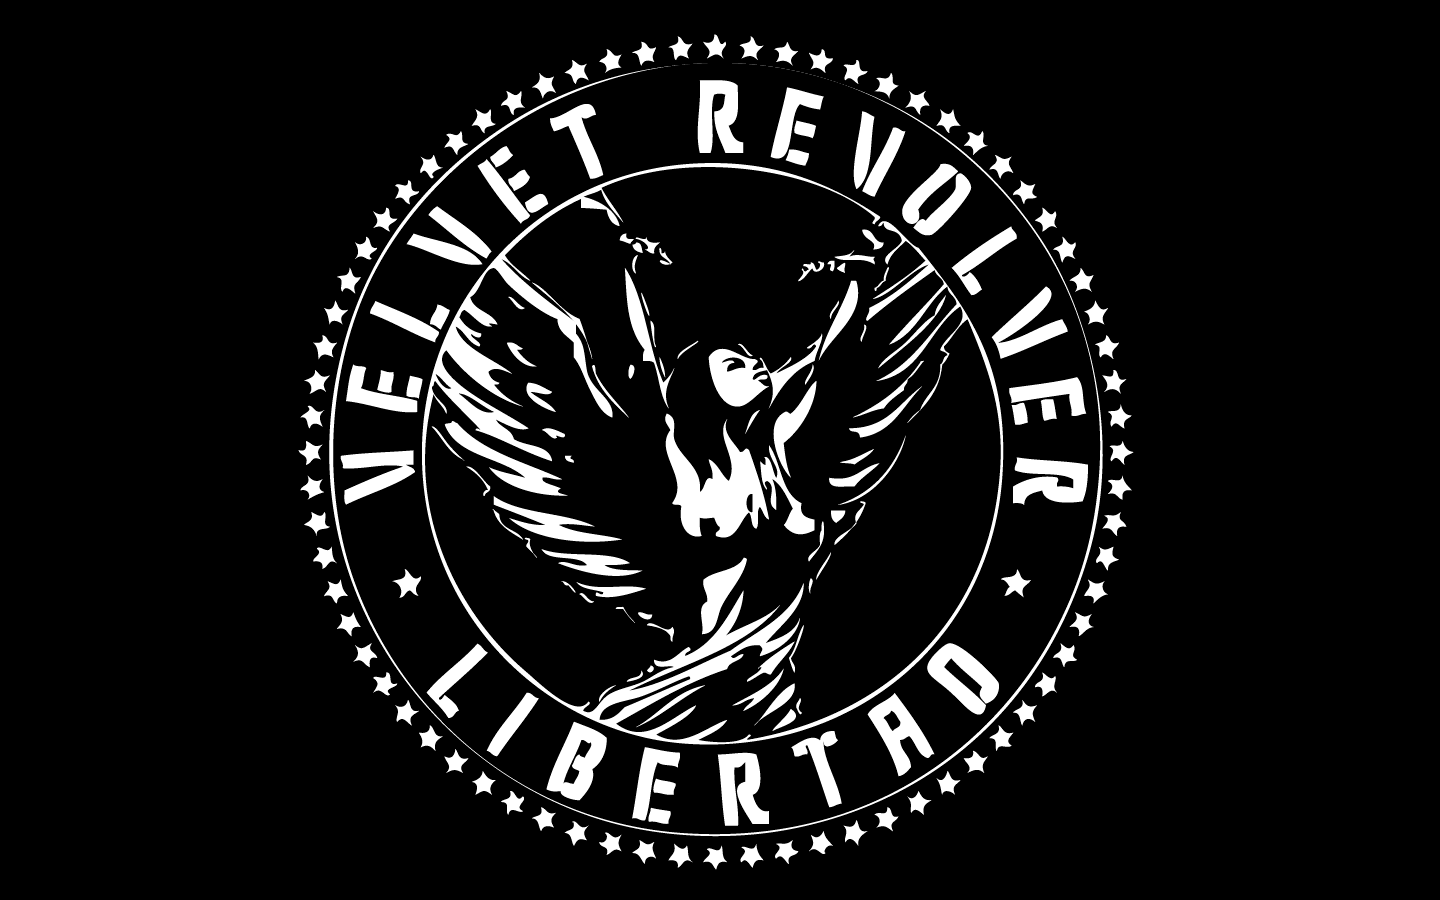 Velvet Revolver Wallpapers